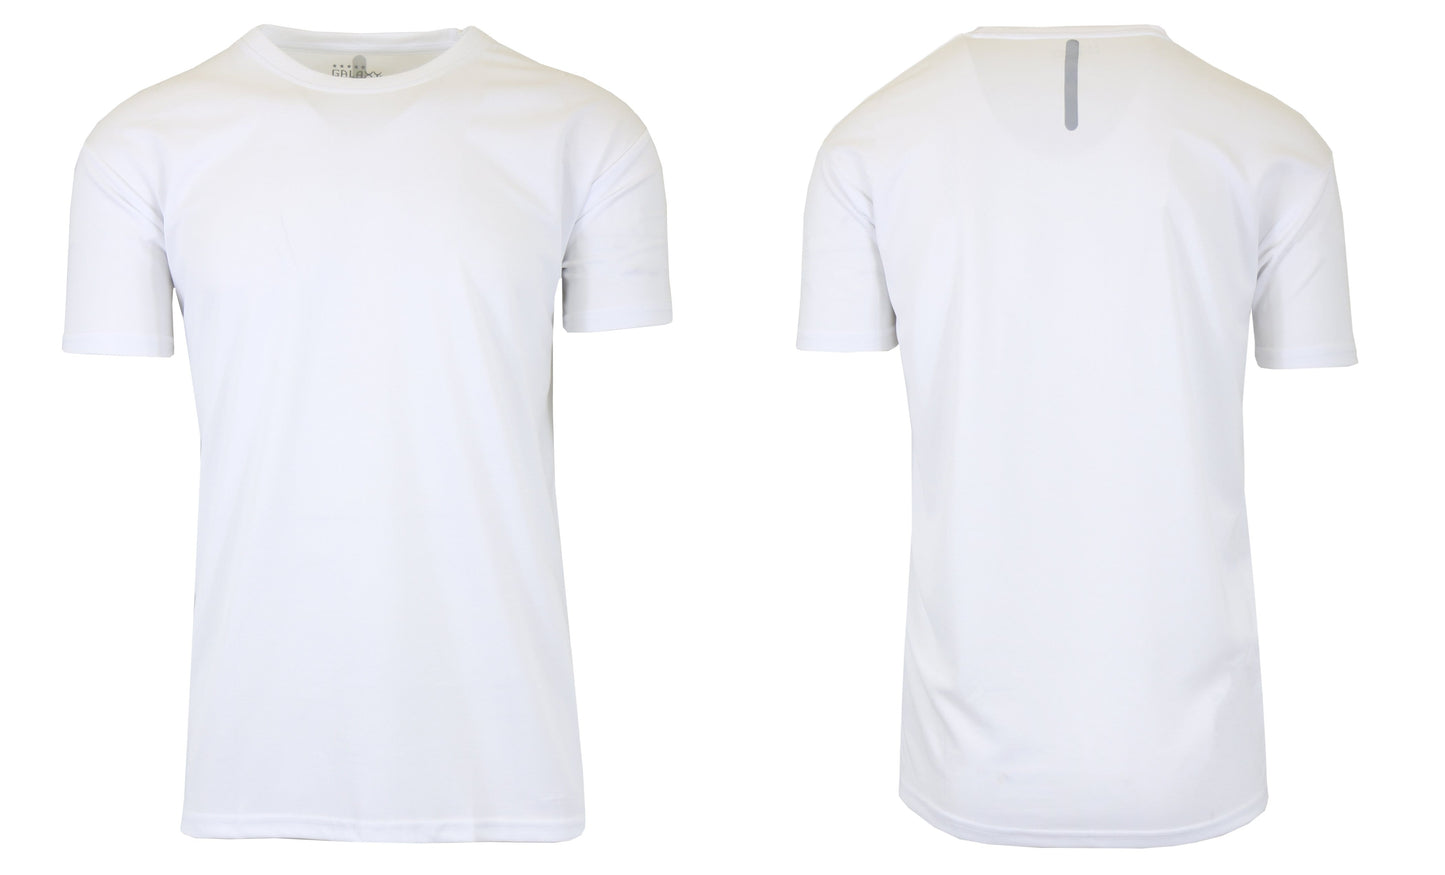 Gravity Threads Mens Sleeveless Moisture Wicking Shirt - White - Small